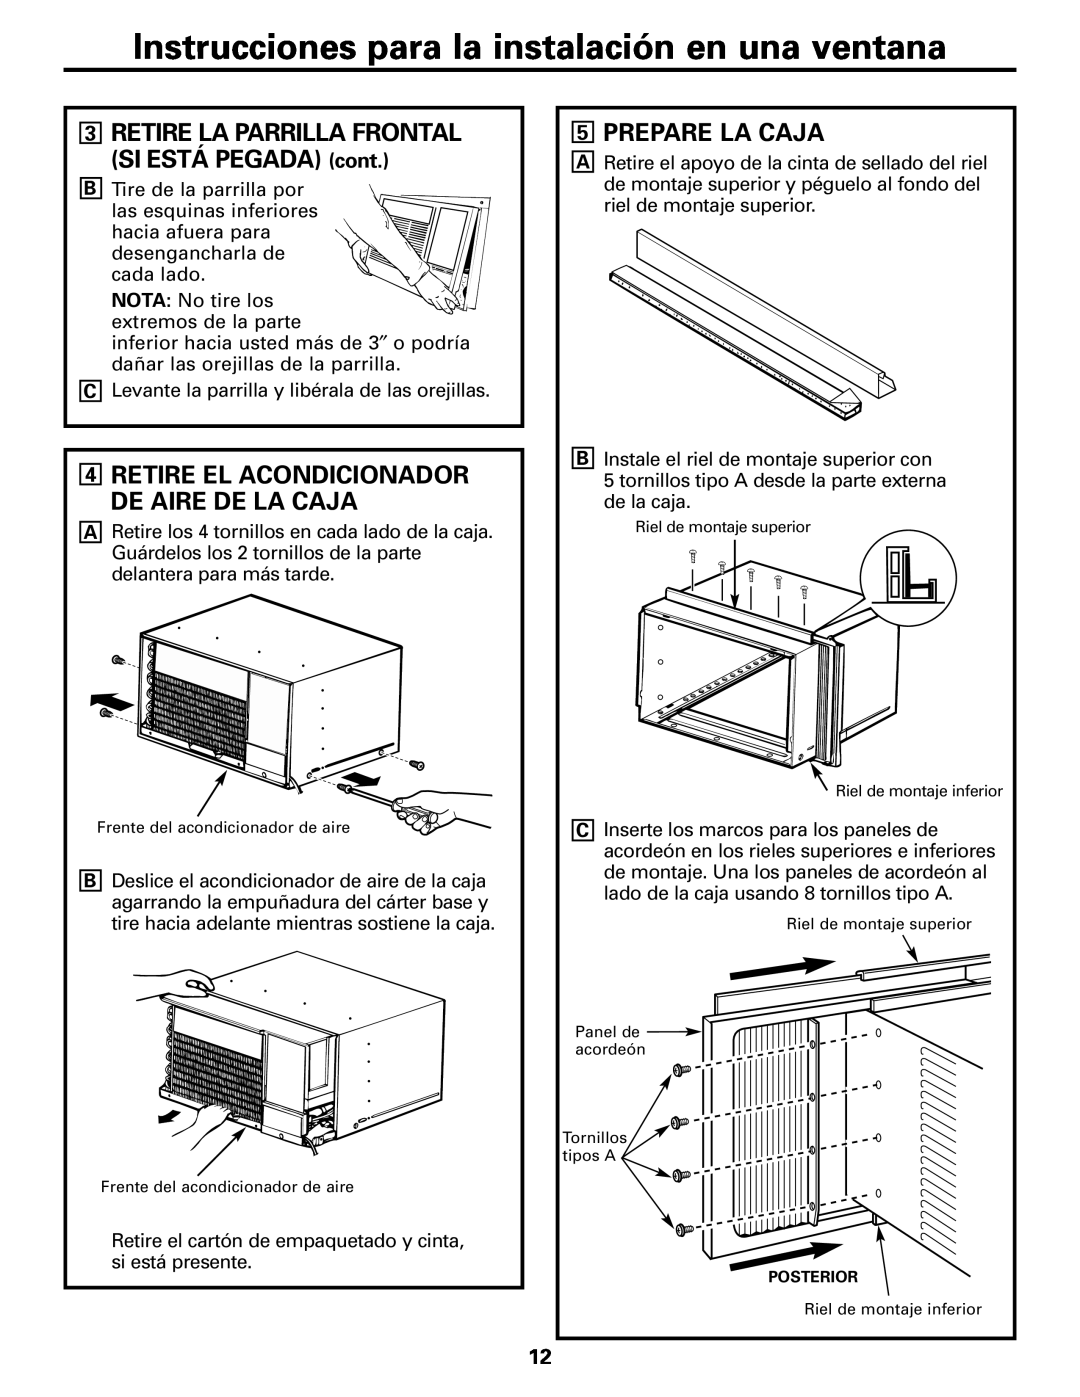 GE ASW24 Prepare La Caja, Retire El Acondicionador De Aire De La Caja, Instrucciones para la instalación en una ventana 